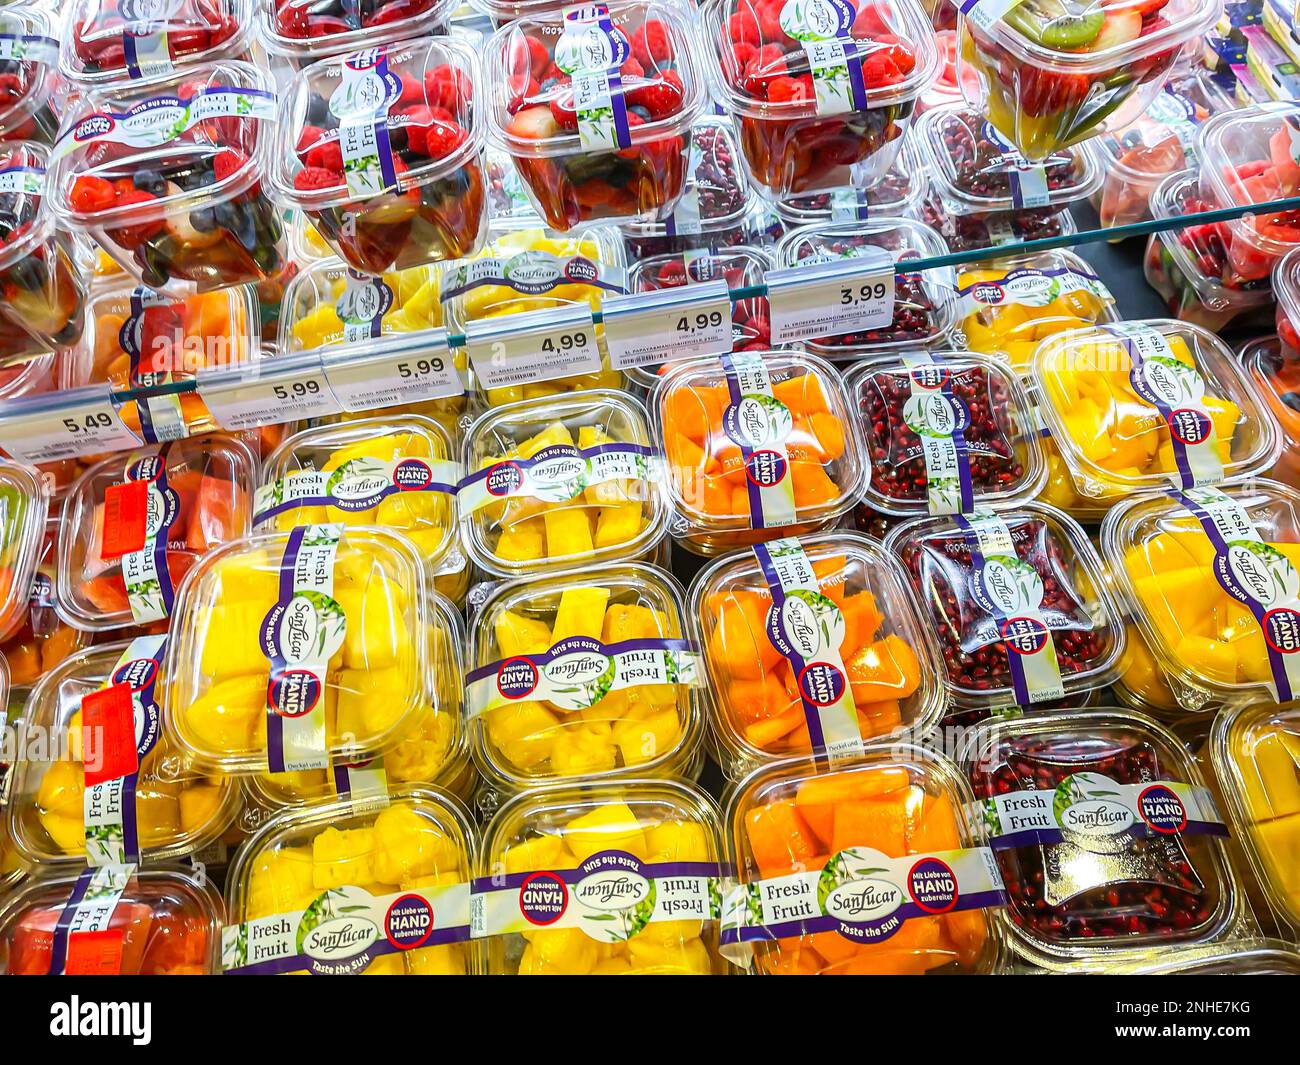 Fruit packed in plastic, packaging waste, supermarket shelf, Stuttgart, Baden-Wuerttemberg, Germany Stock Photo